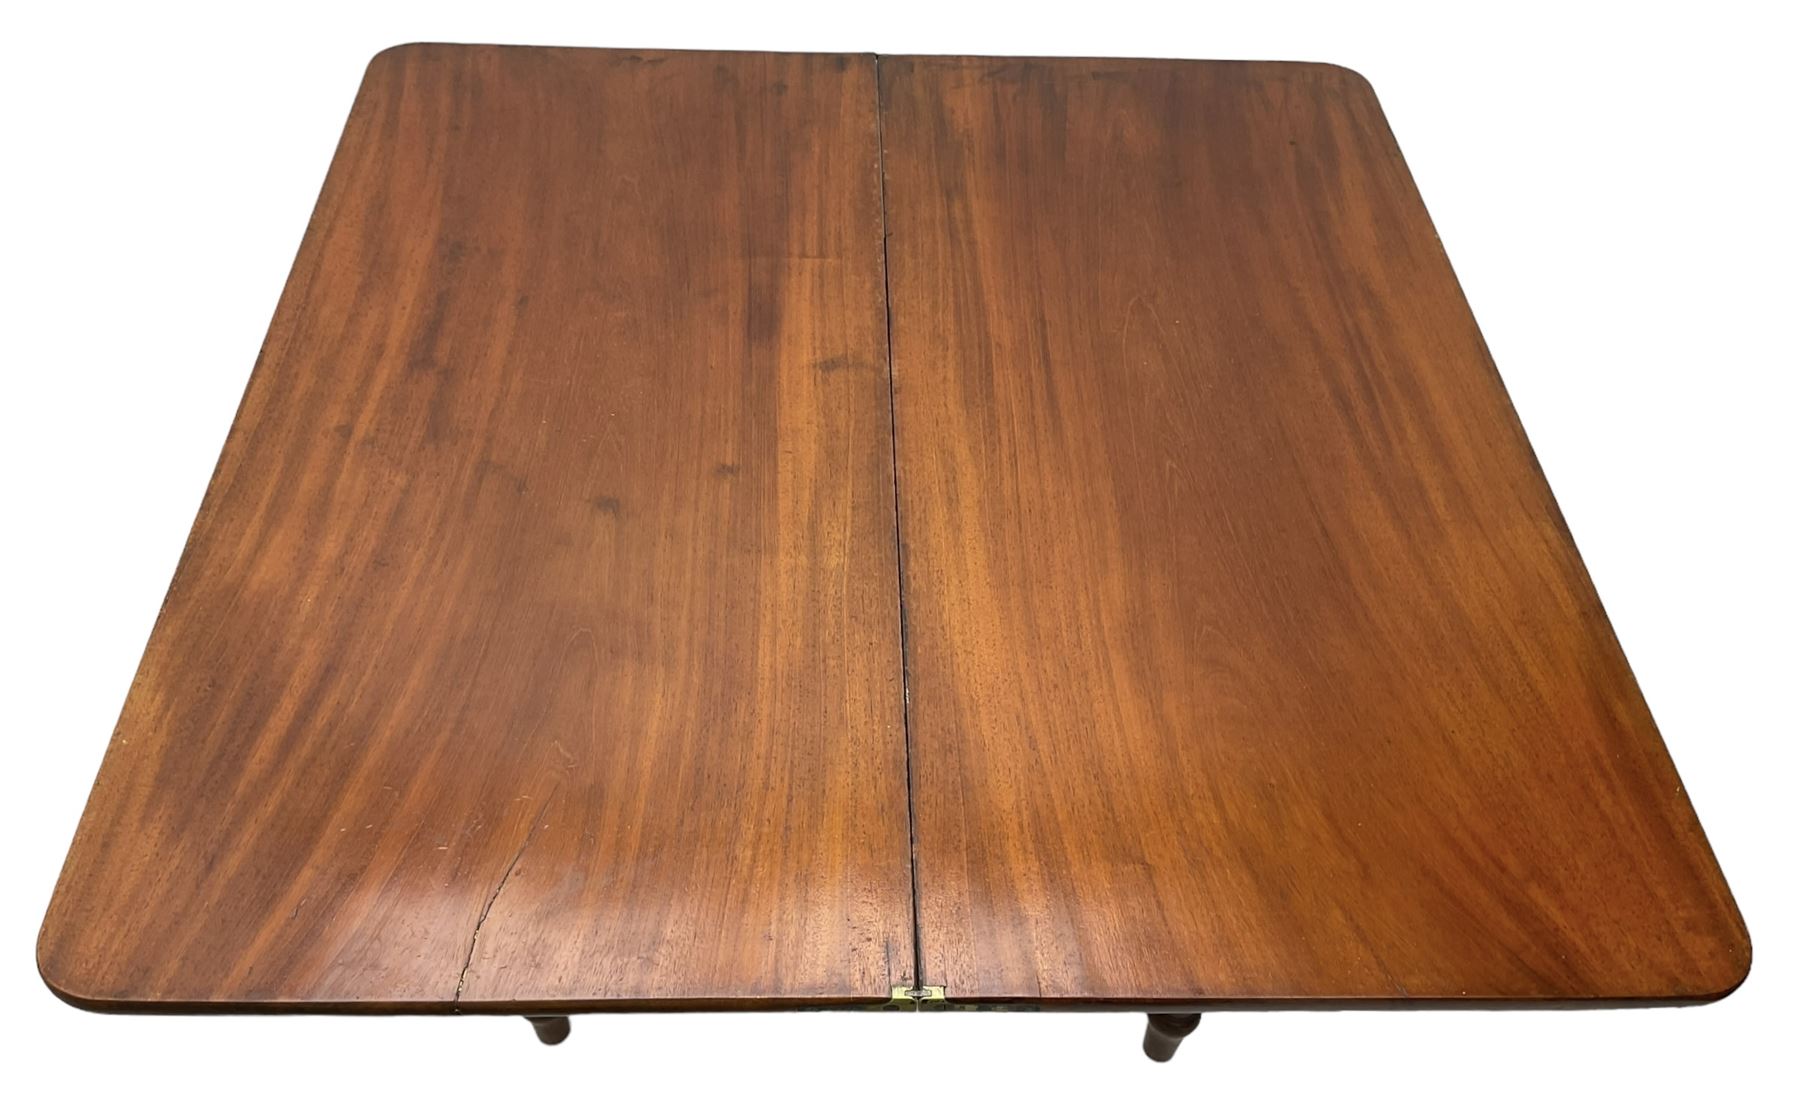 19th century mahogany tea table - Image 6 of 6